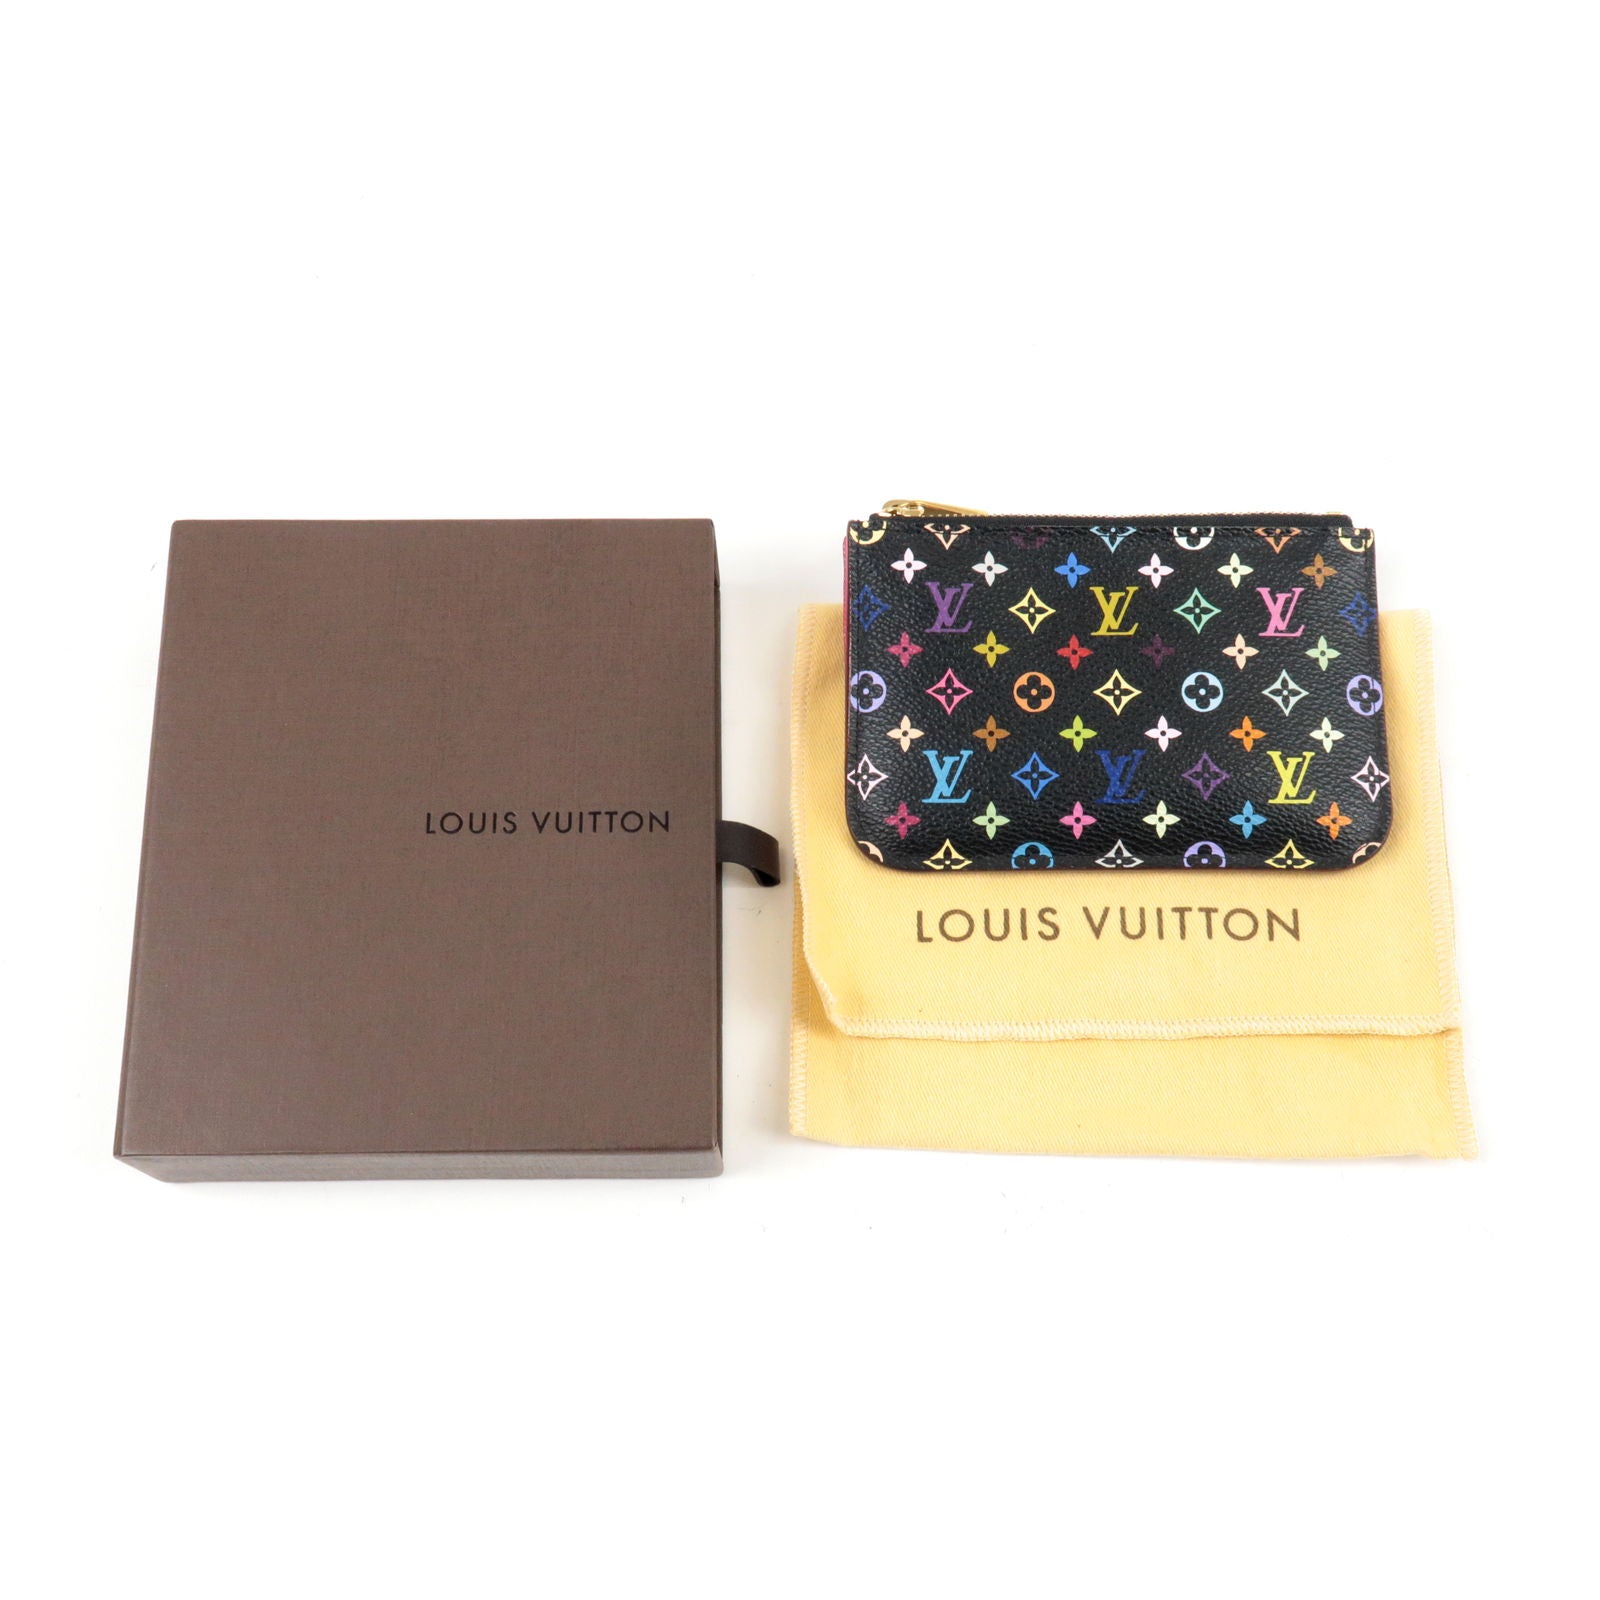 Noir - ep_vintage luxury Store - Pochette - Cles - Louis Vuitton